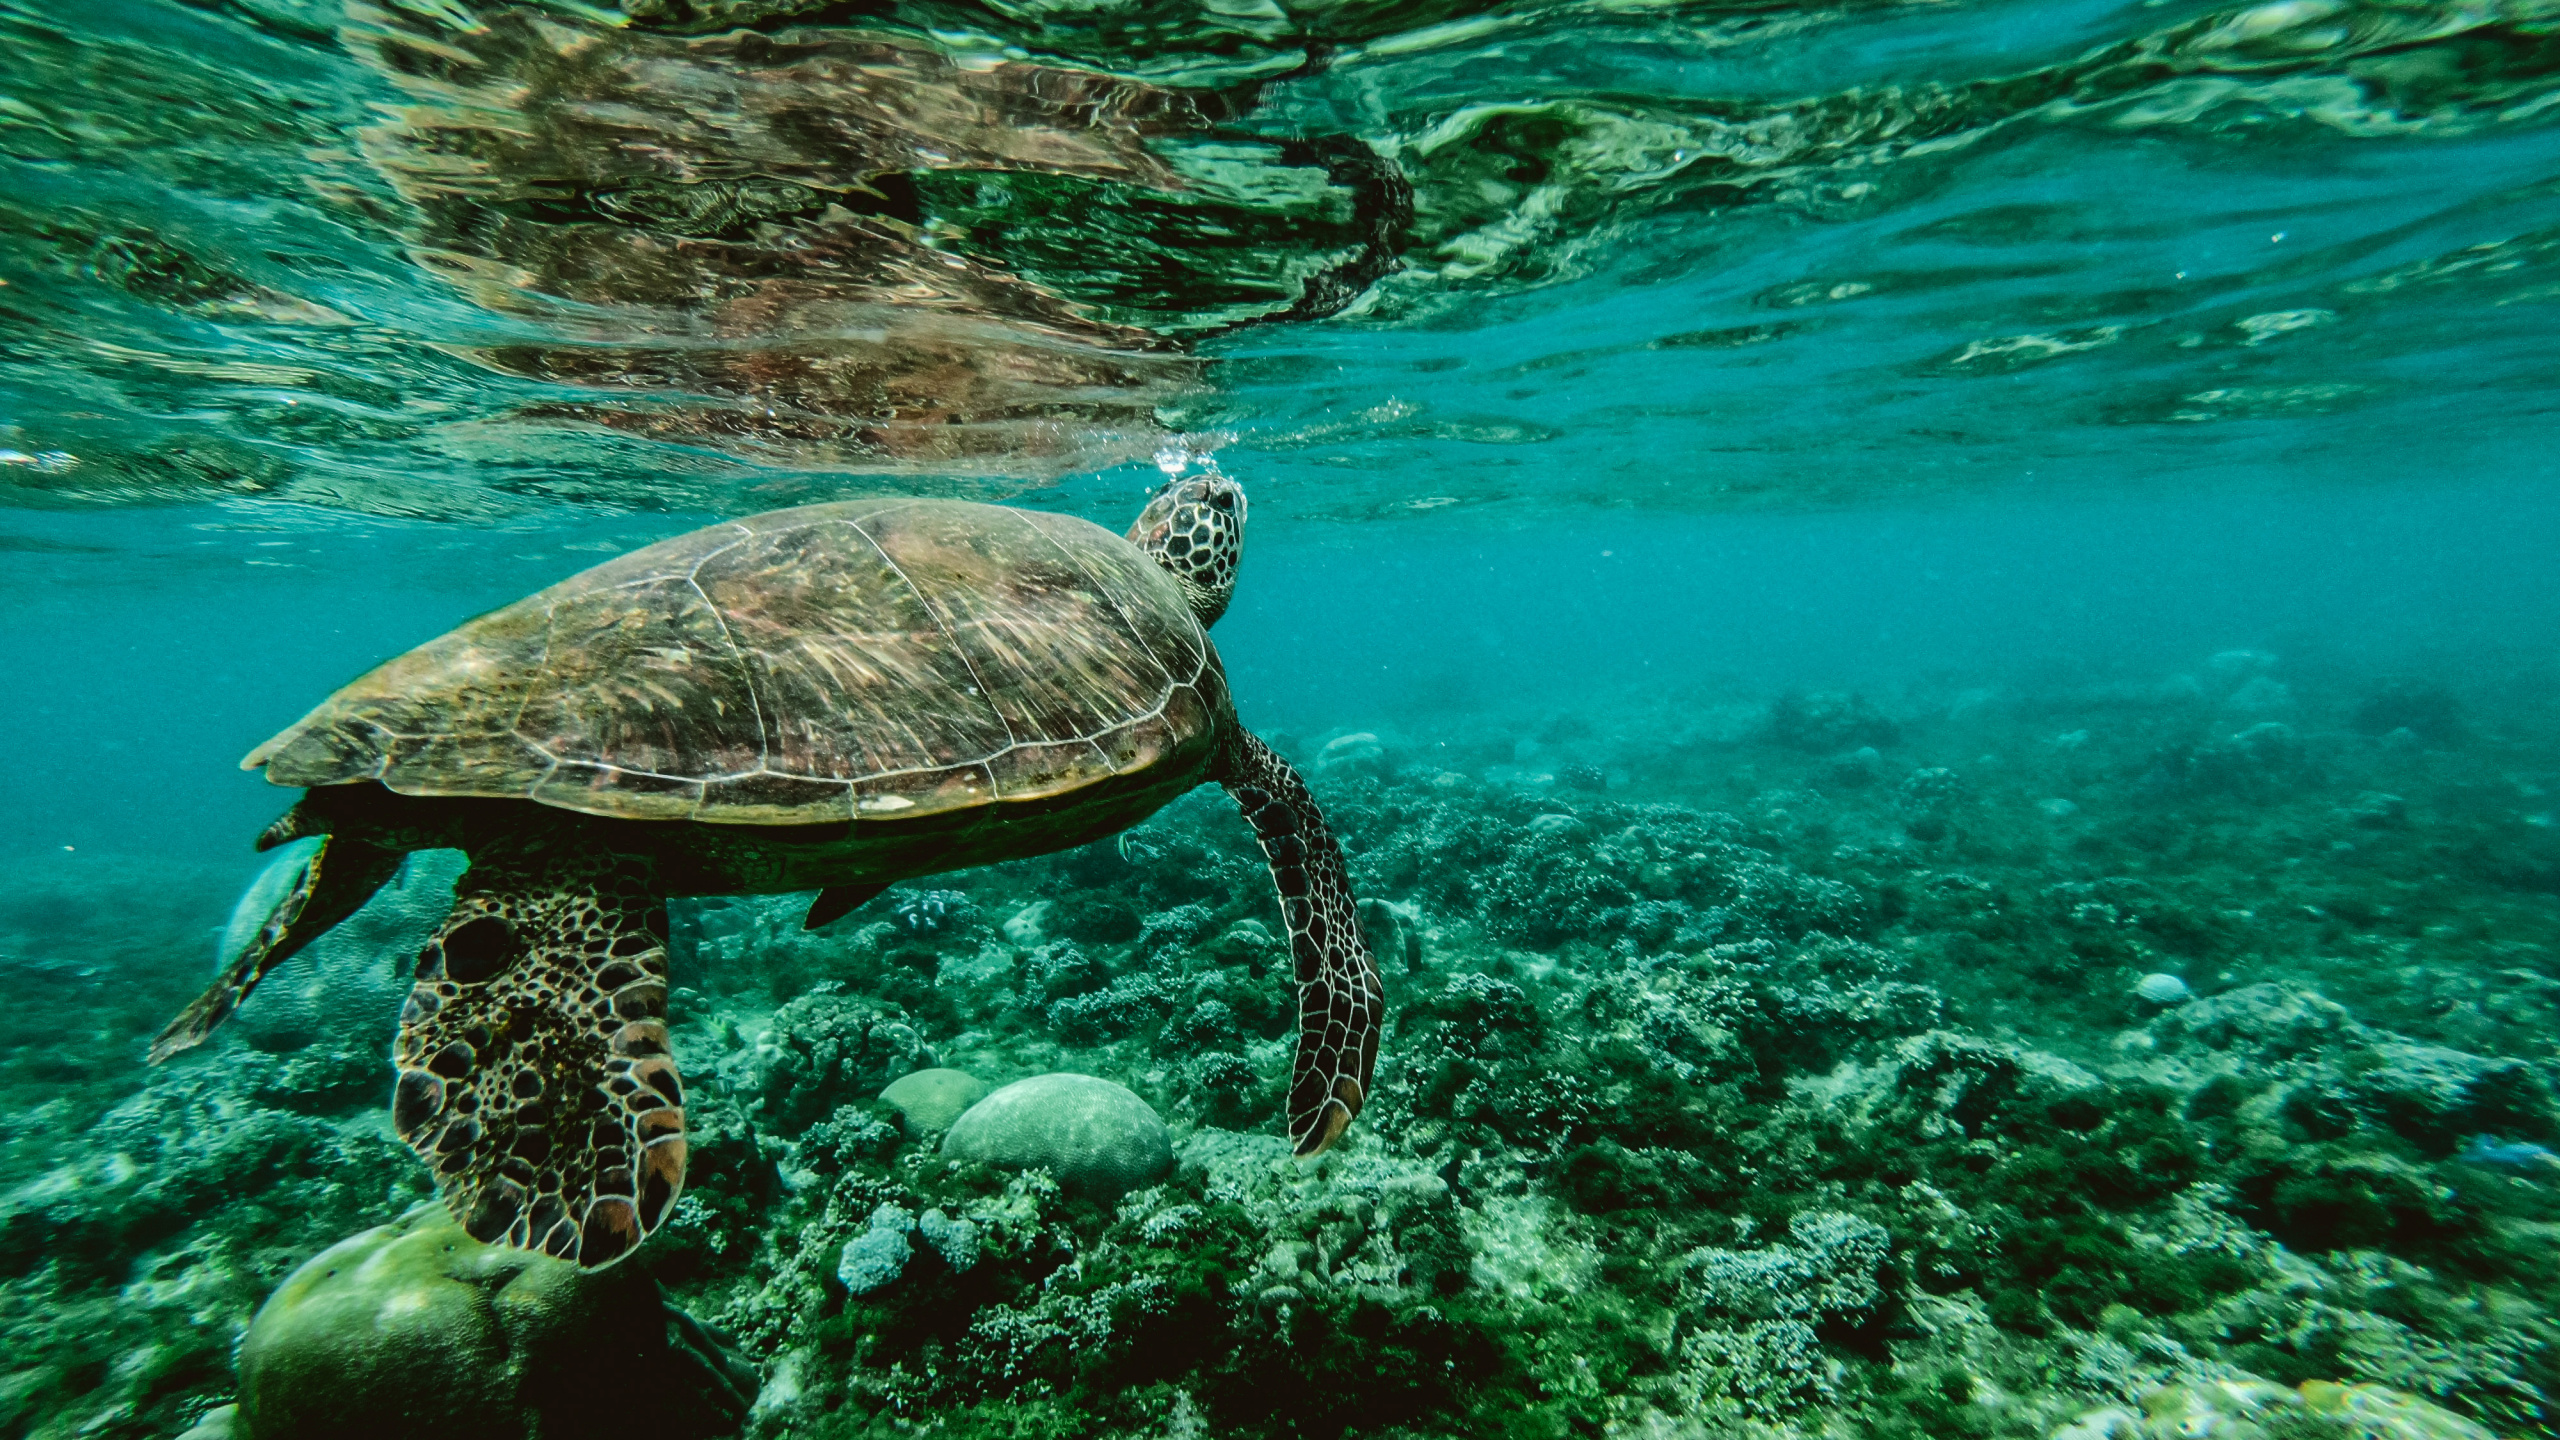 乌龟, 大海, S海龟, 水下, 海洋生物学 壁纸 2560x1440 允许